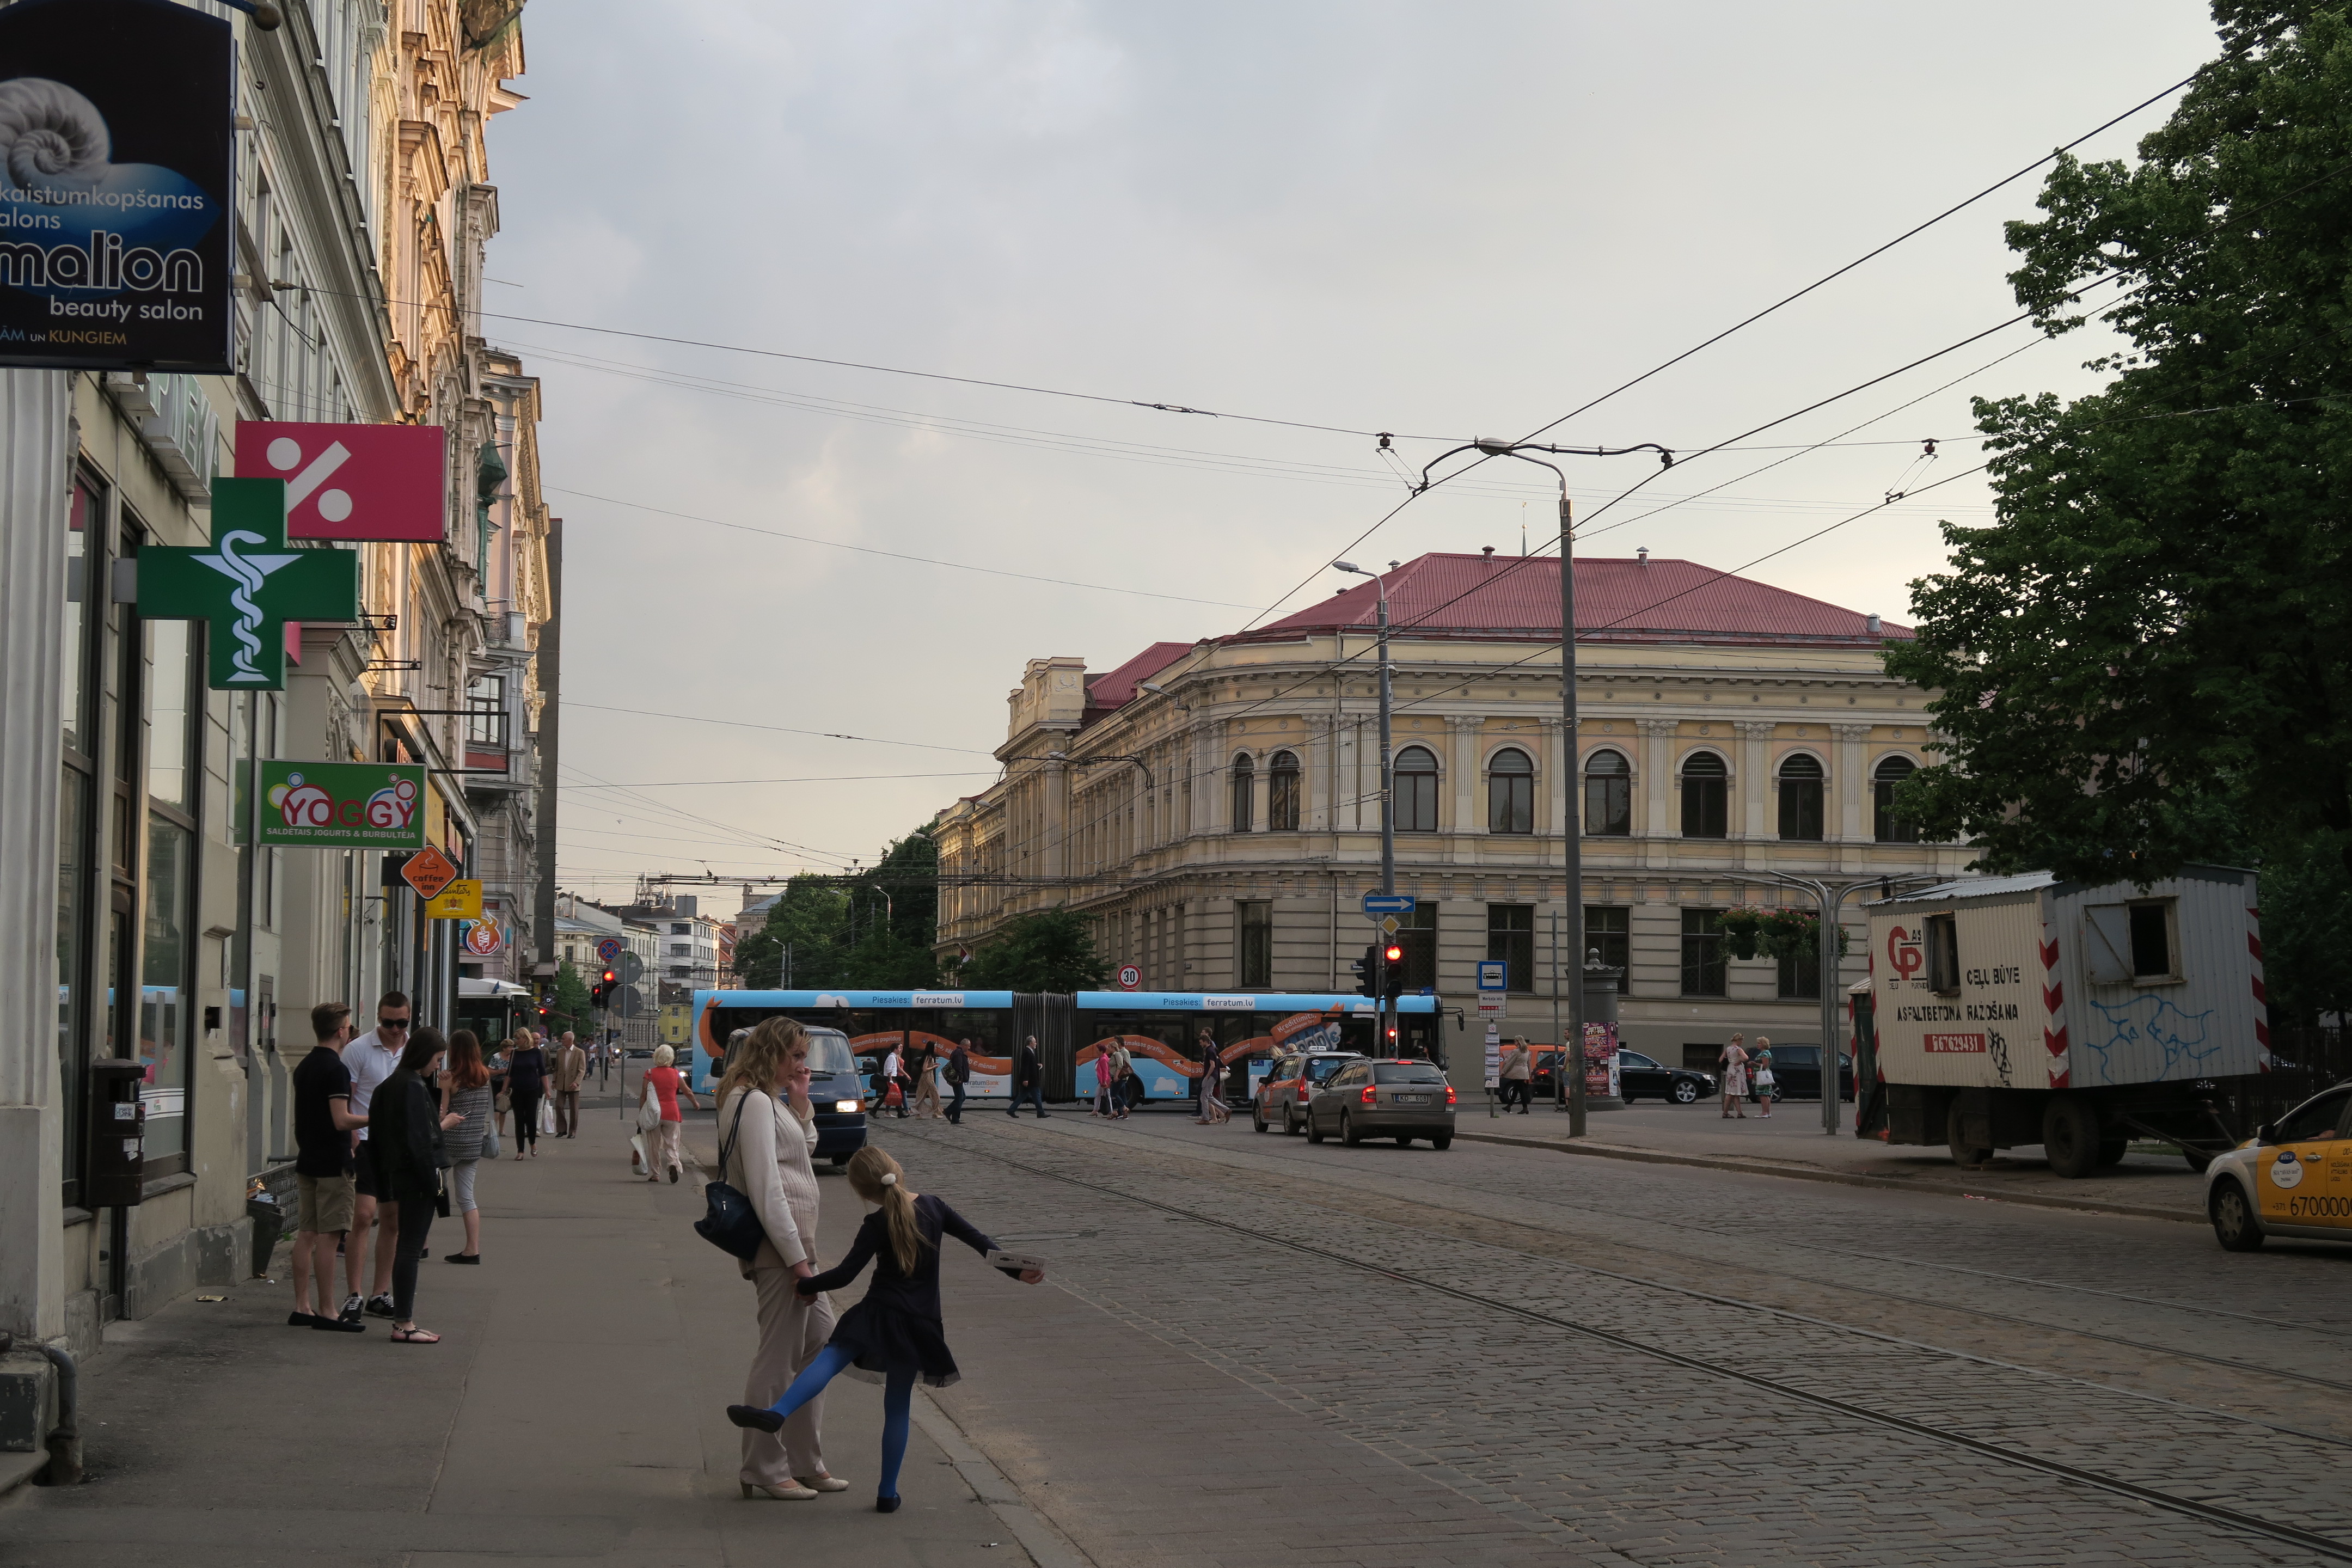 午後９時頃の市内
（右：国立音楽アカデミー　左奥：ラトビア大学経済学部）の画像